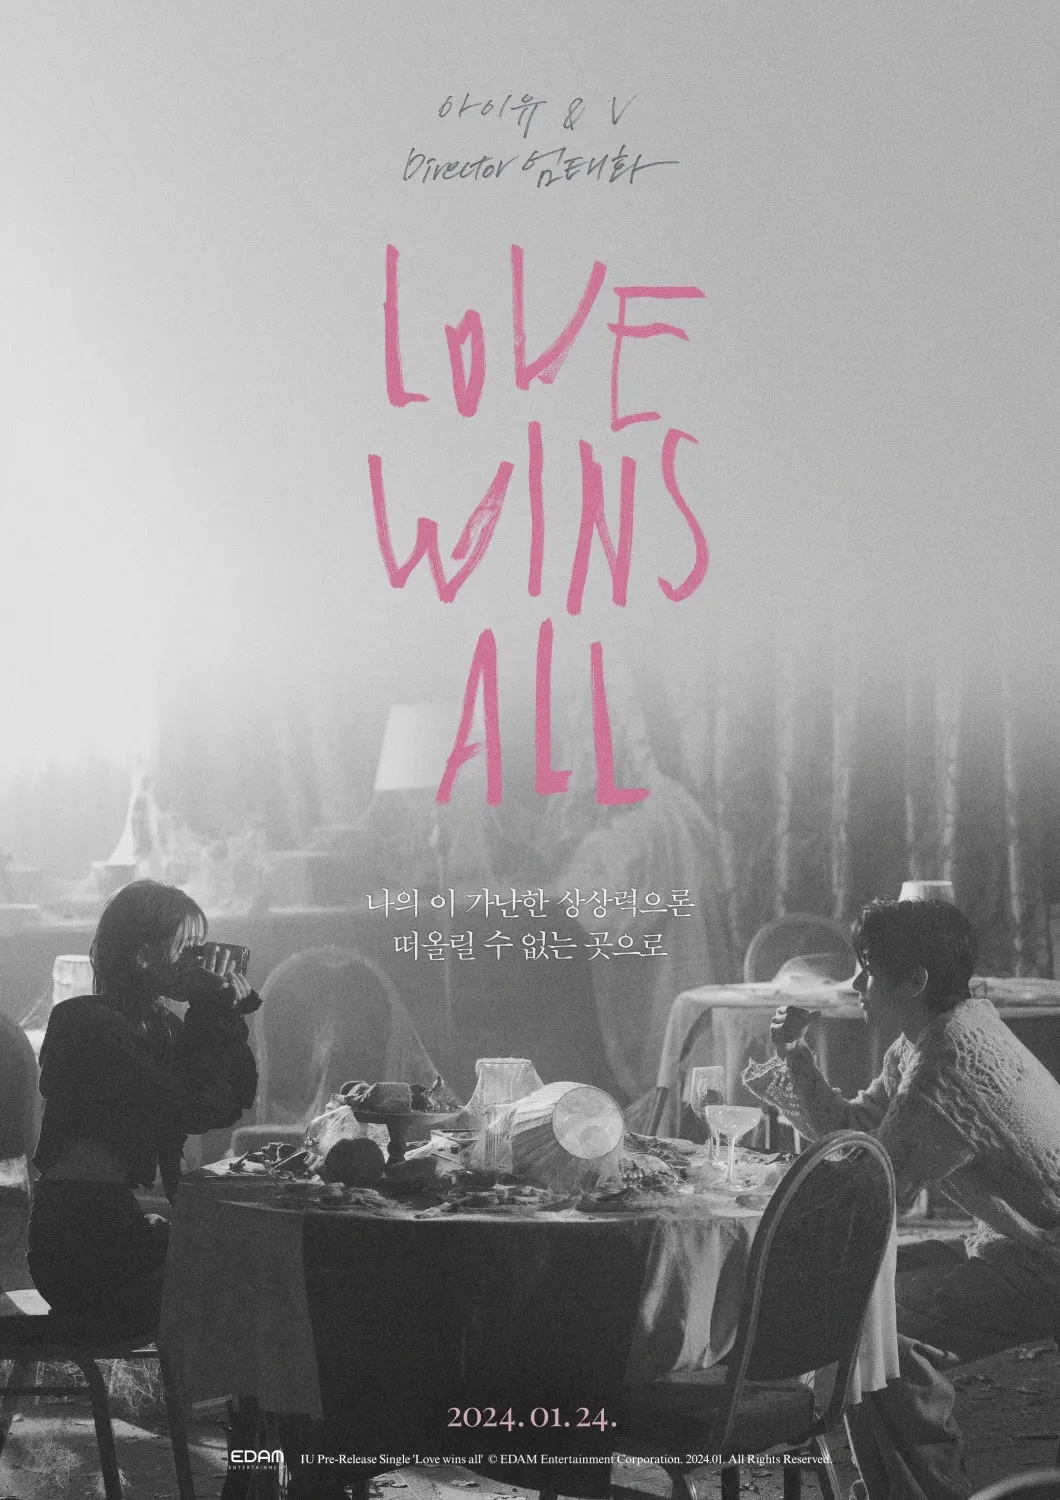 IU ändert Titel von „Love Wins“ nach Gegenreaktion – erfahren Sie hier den neuen Namen des Songs!